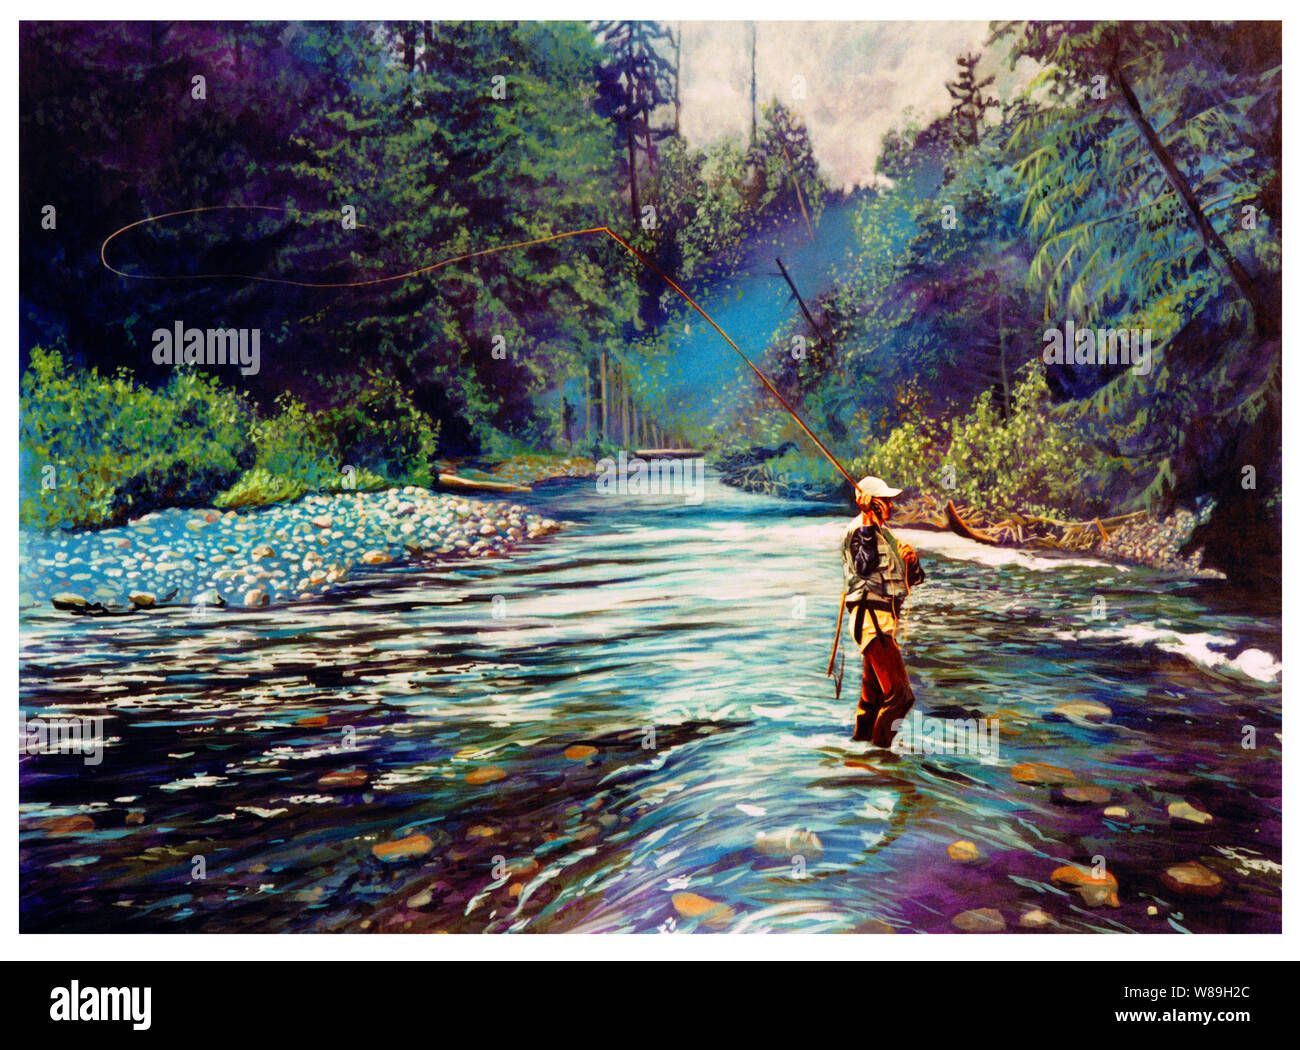 L'homme à gué la pêche à la mouche sur une rivière, sa ligne chassé derrière lui. Les arbres et les forêts qui entourent la rivière est claire et complète des s Banque D'Images